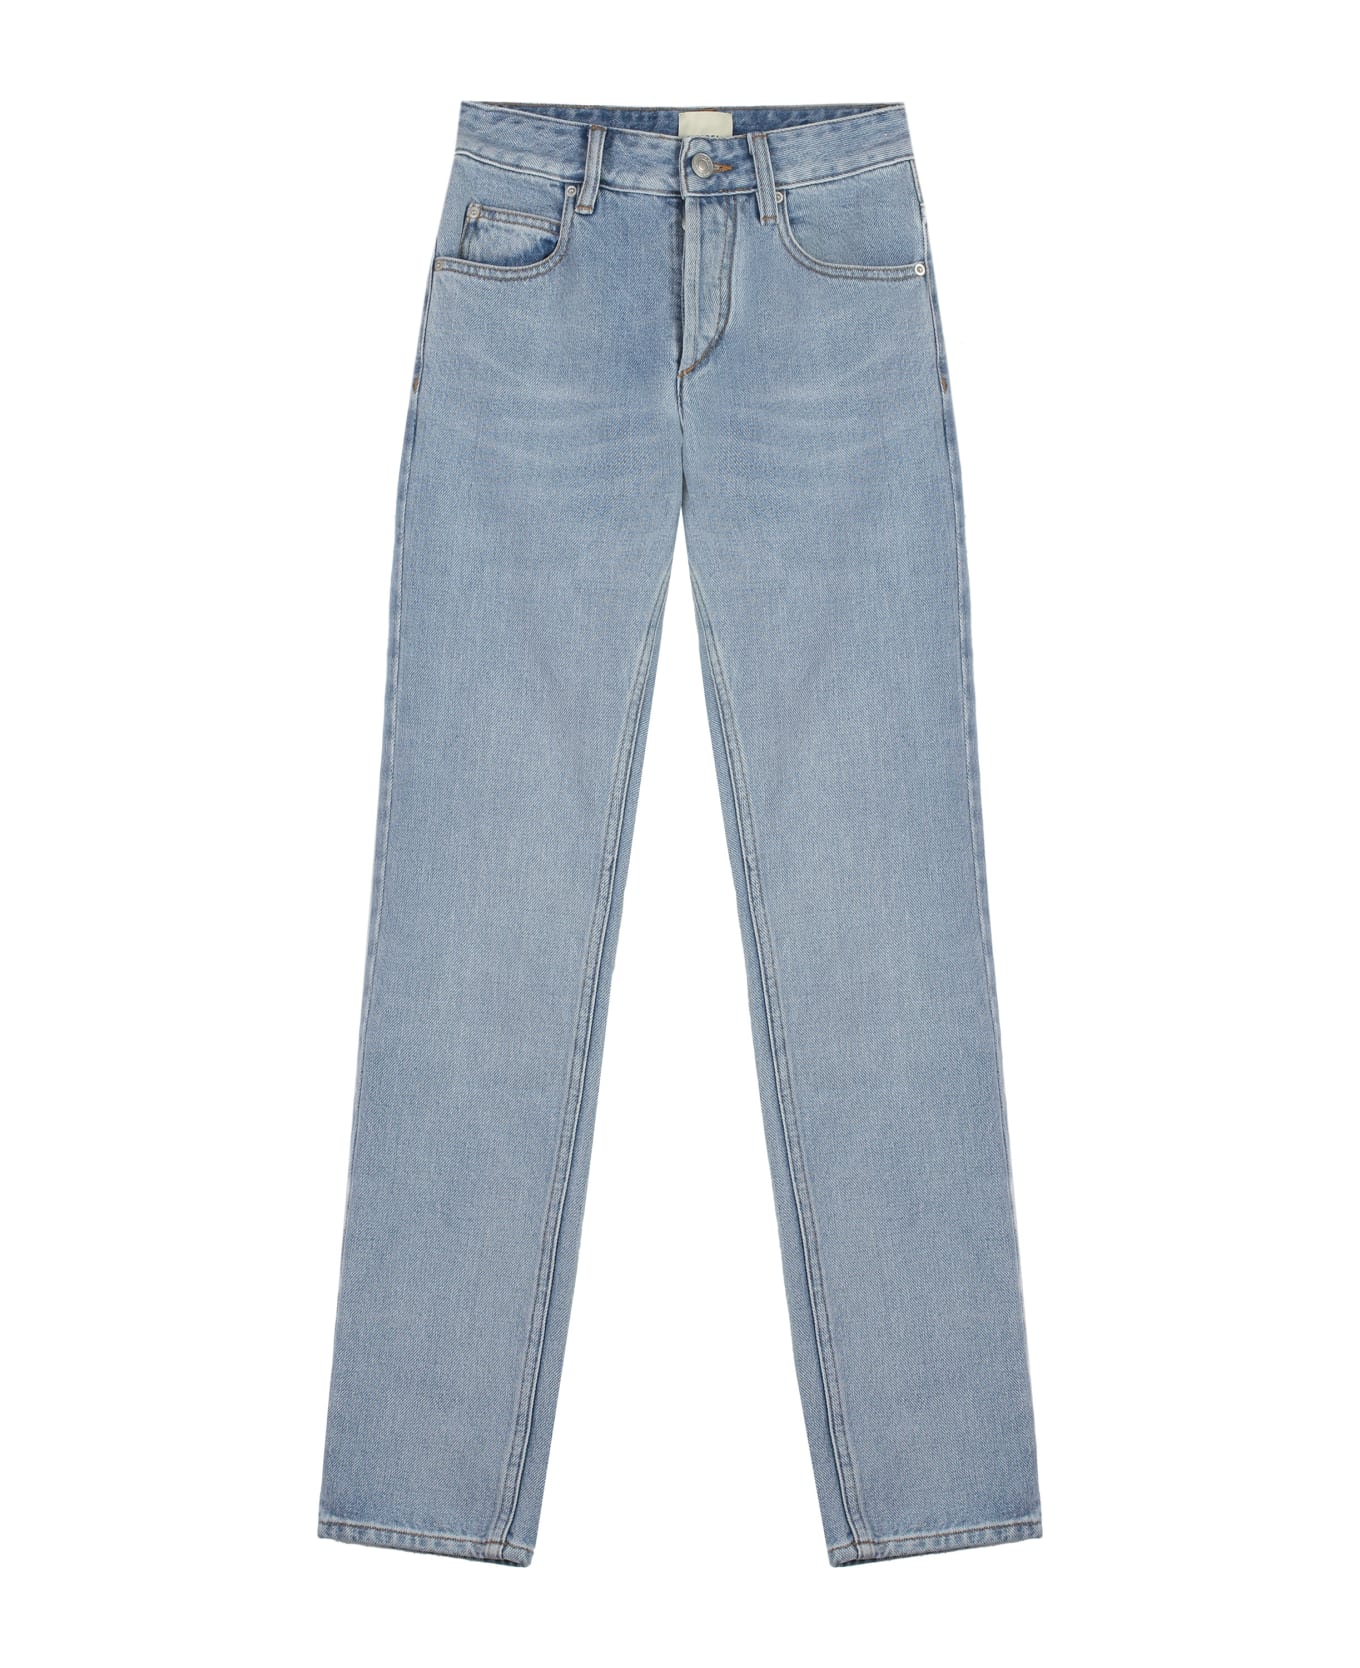 Isabel Marant Jiliana High-rise Skinny-fit Jeans - Denim デニム